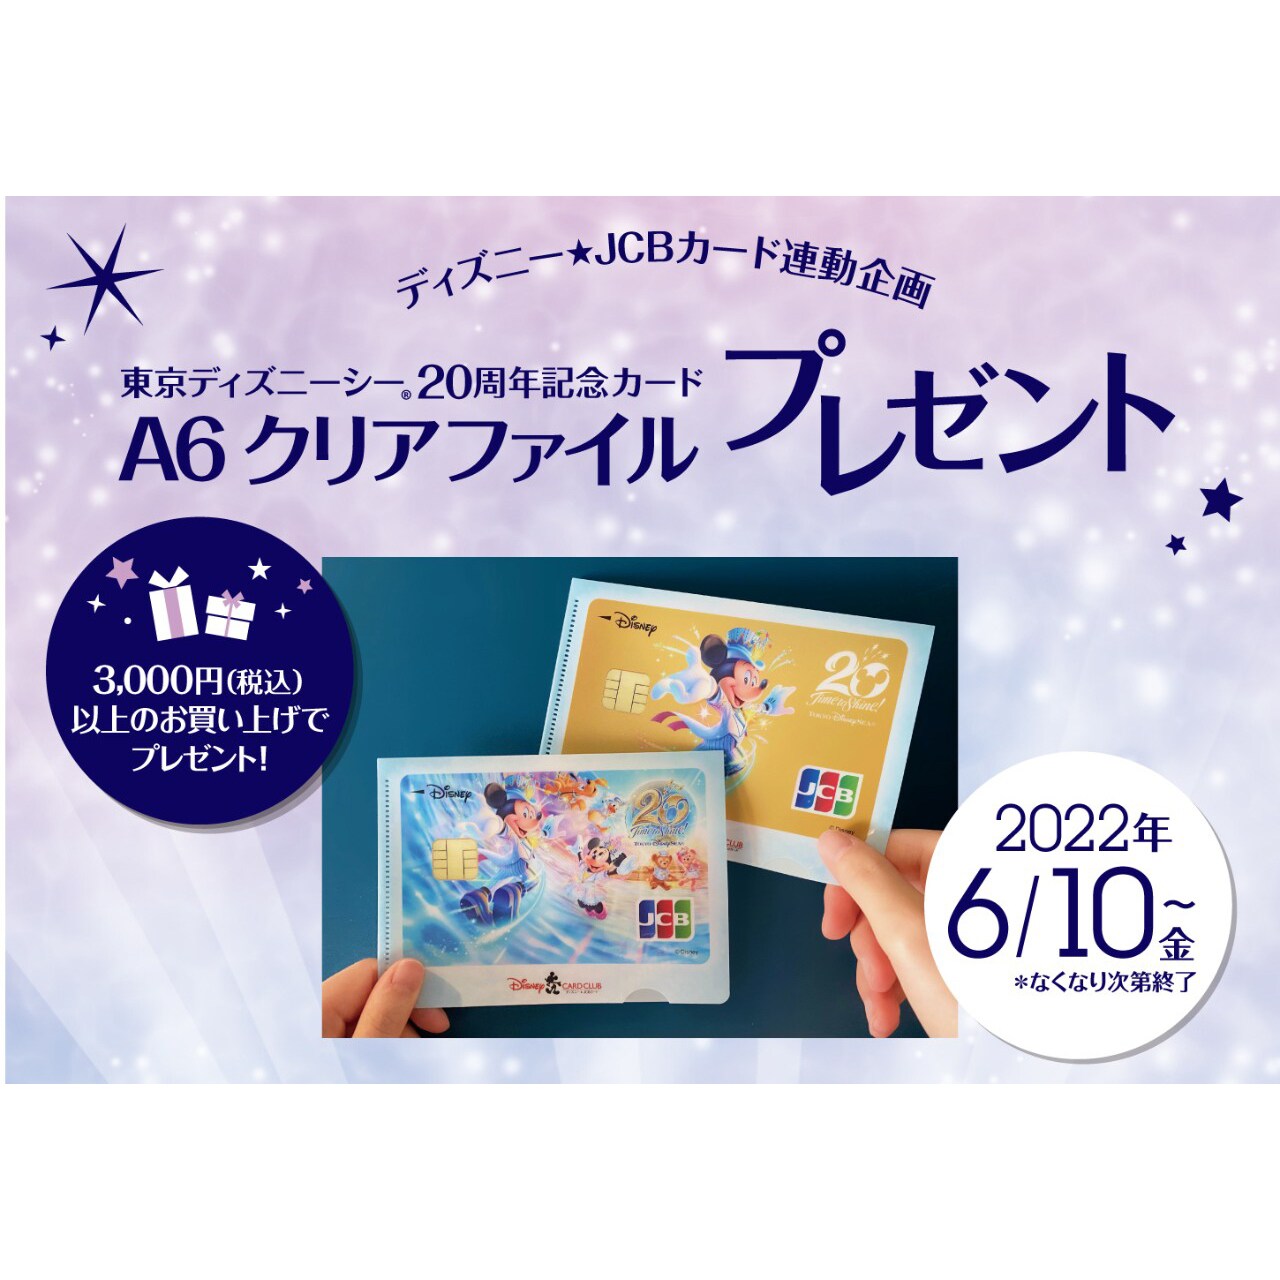 ディズニー☆JCBカード連動企画！東京ディズニーシー20周年記念カード